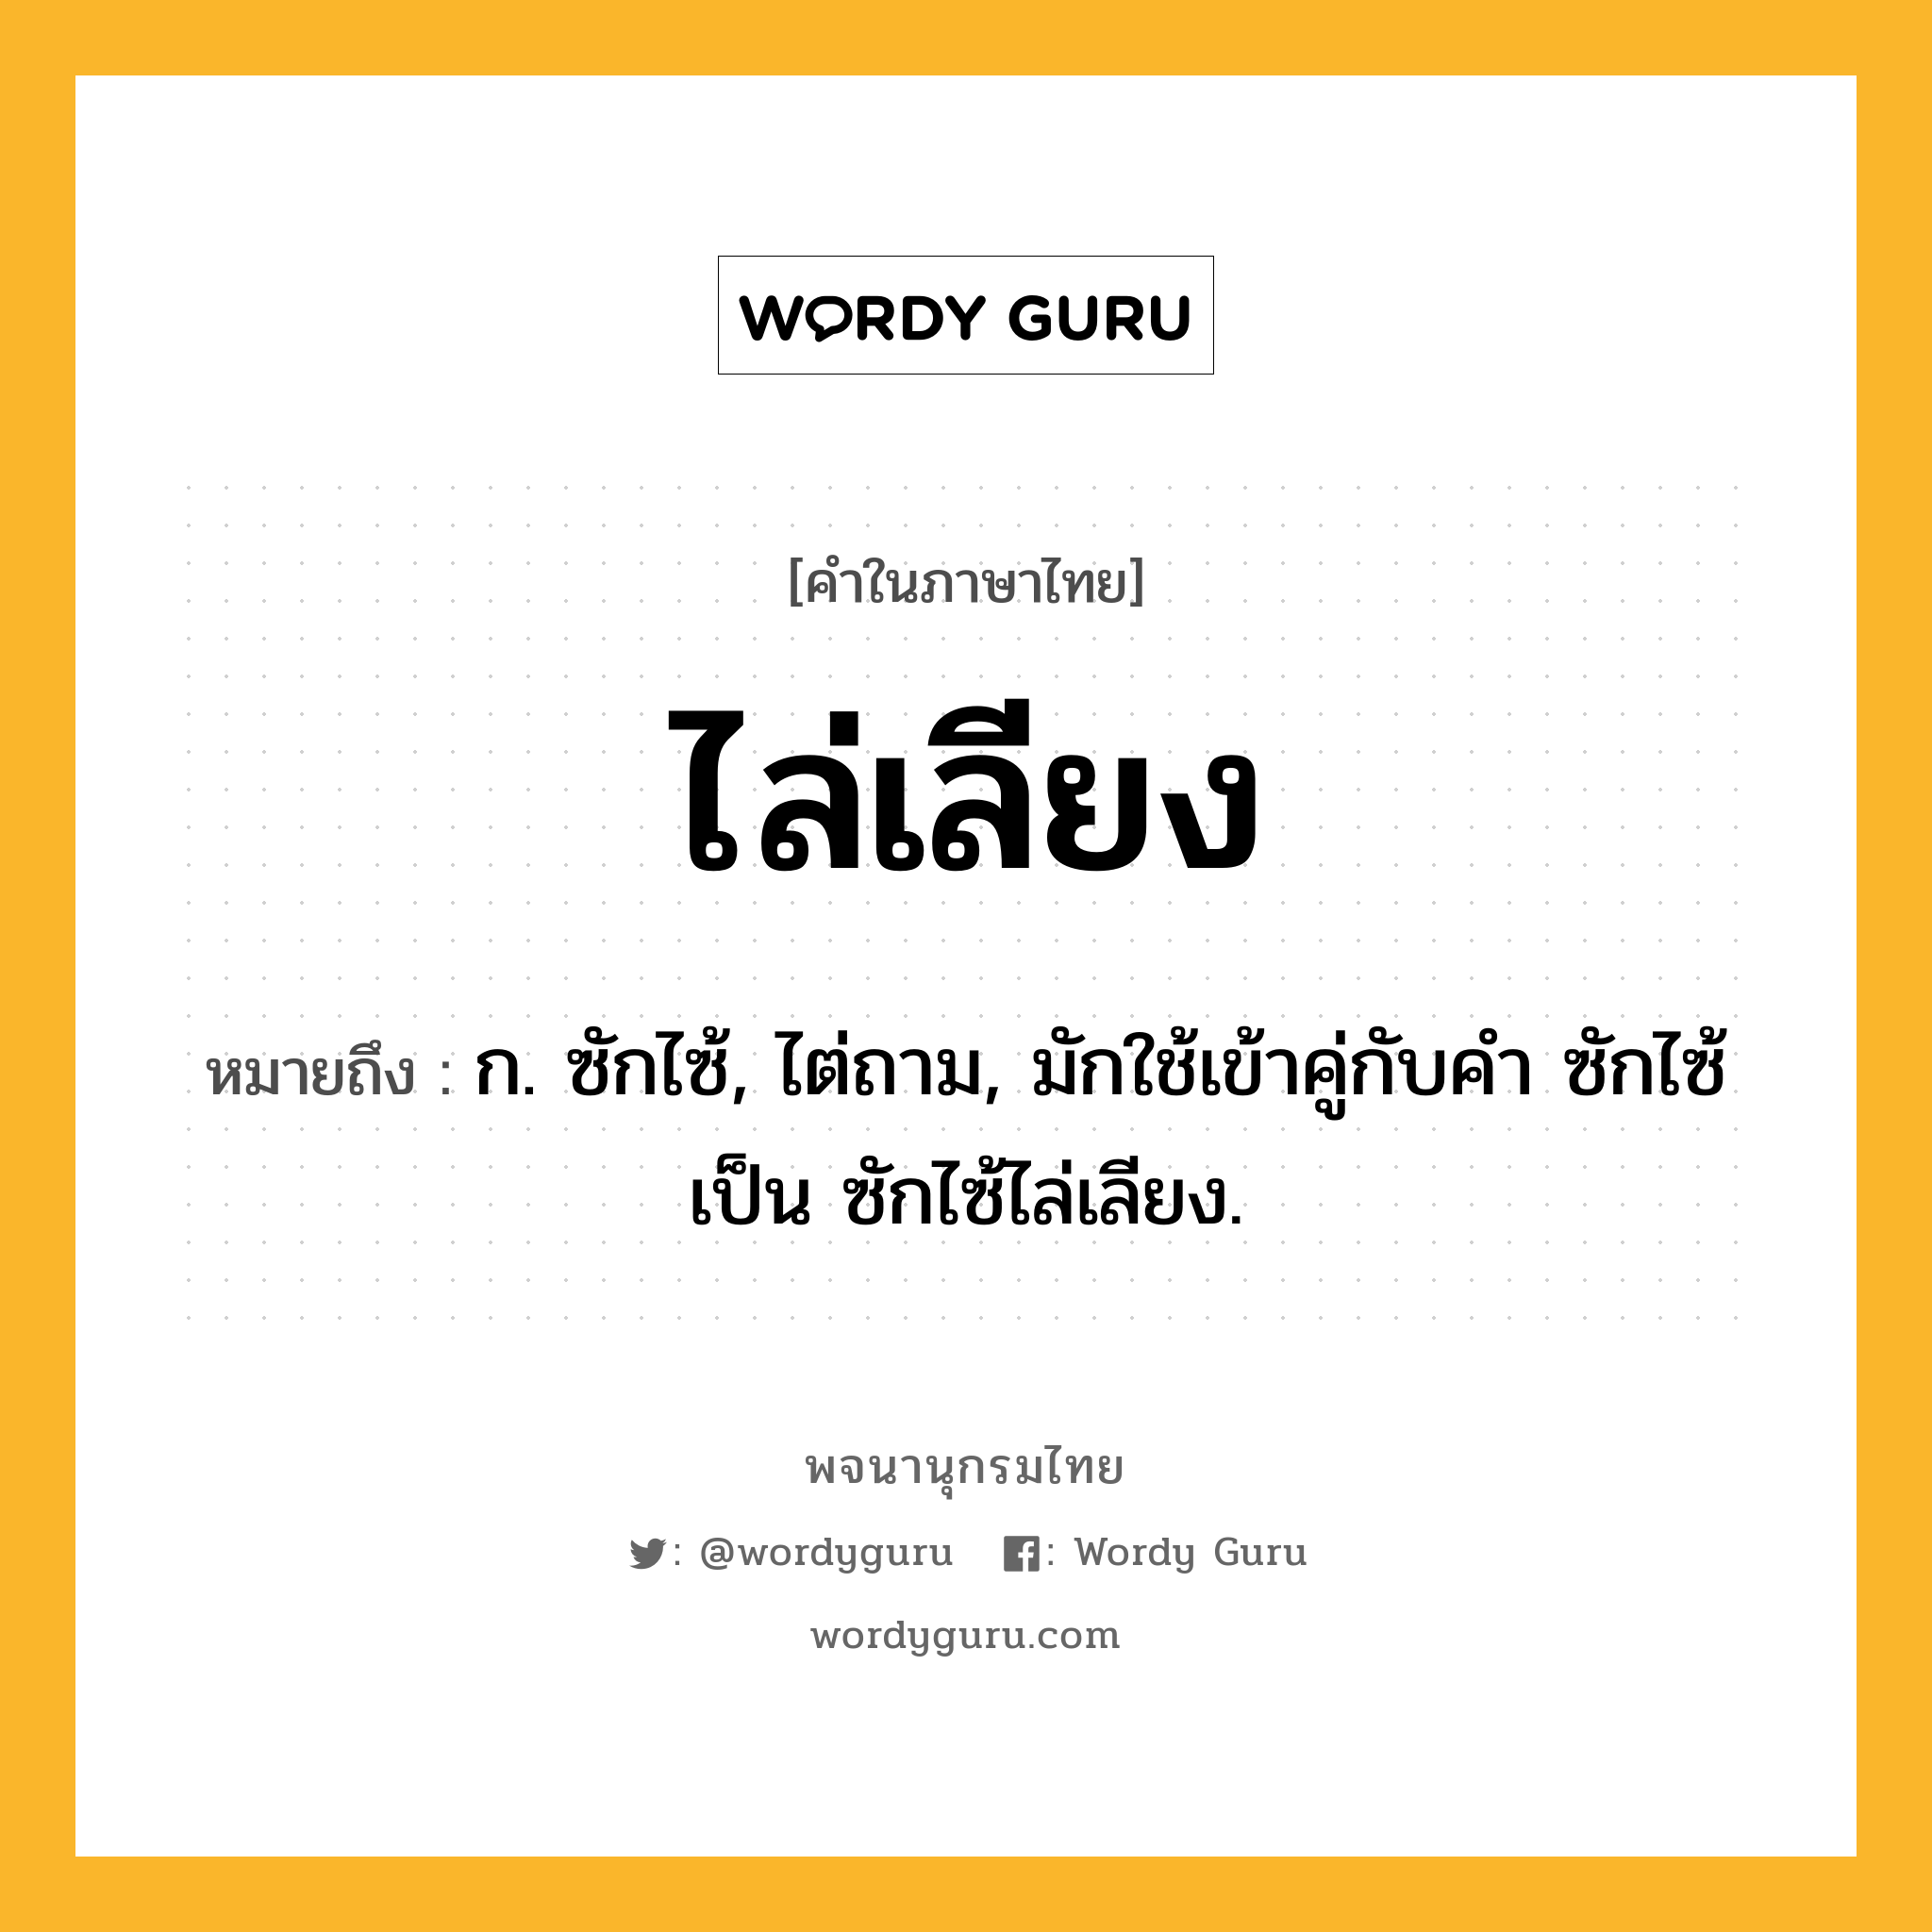 ไล่เลียง หมายถึงอะไร?, คำในภาษาไทย ไล่เลียง หมายถึง ก. ซักไซ้, ไต่ถาม, มักใช้เข้าคู่กับคำ ซักไซ้ เป็น ซักไซ้ไล่เลียง.